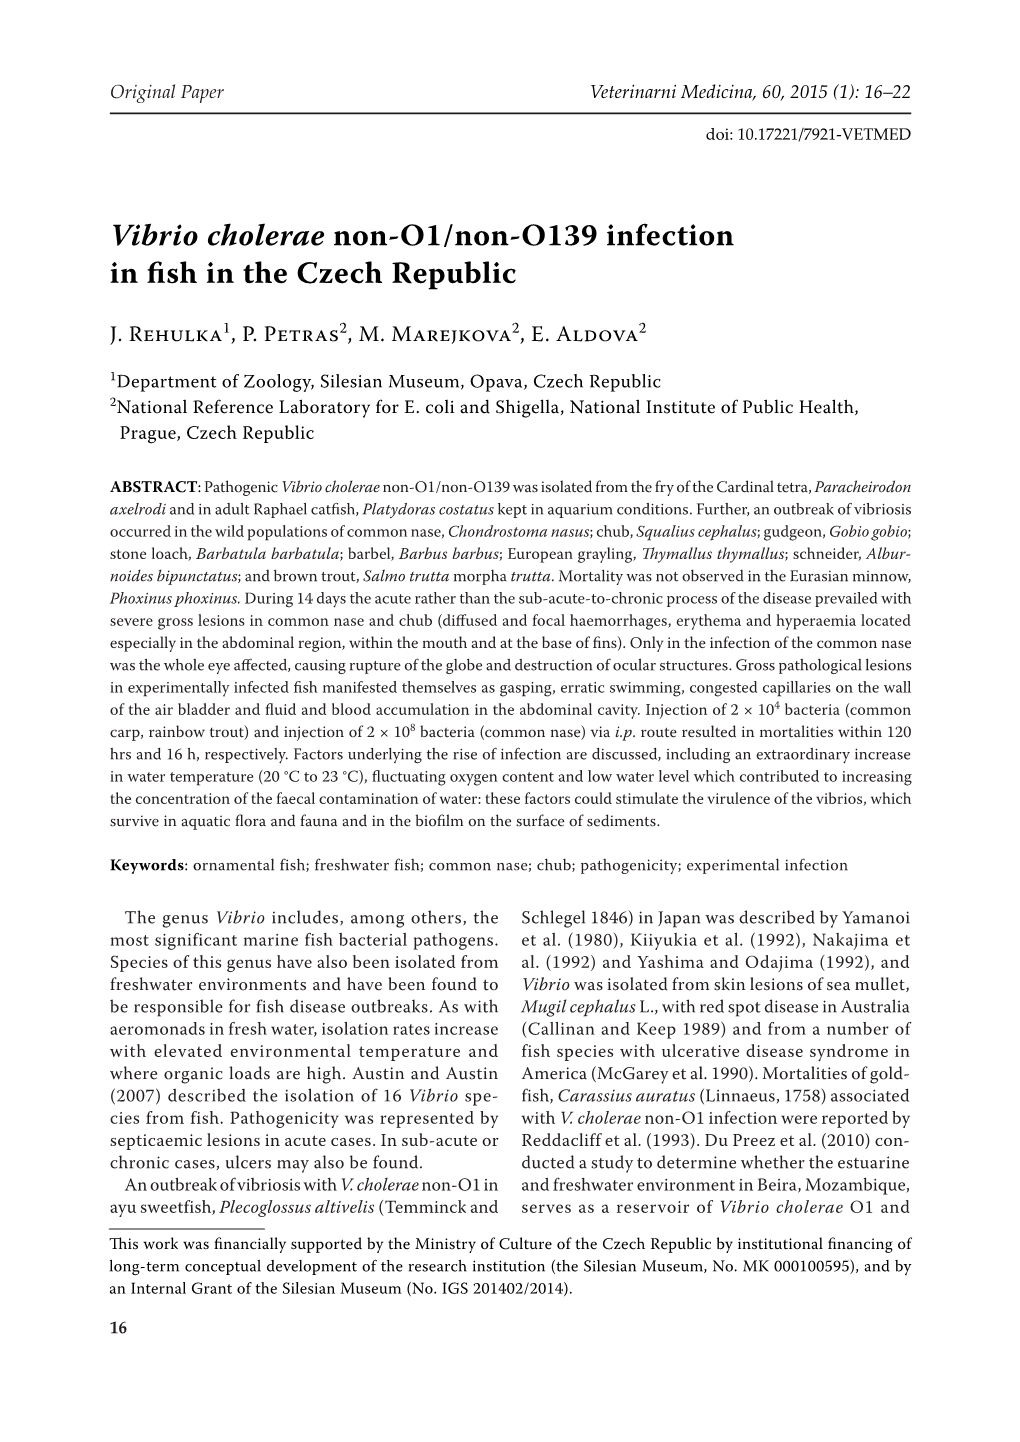 Vibrio Cholerae Non-O1/Non-O139 Infection in Fish in the Czech Republic